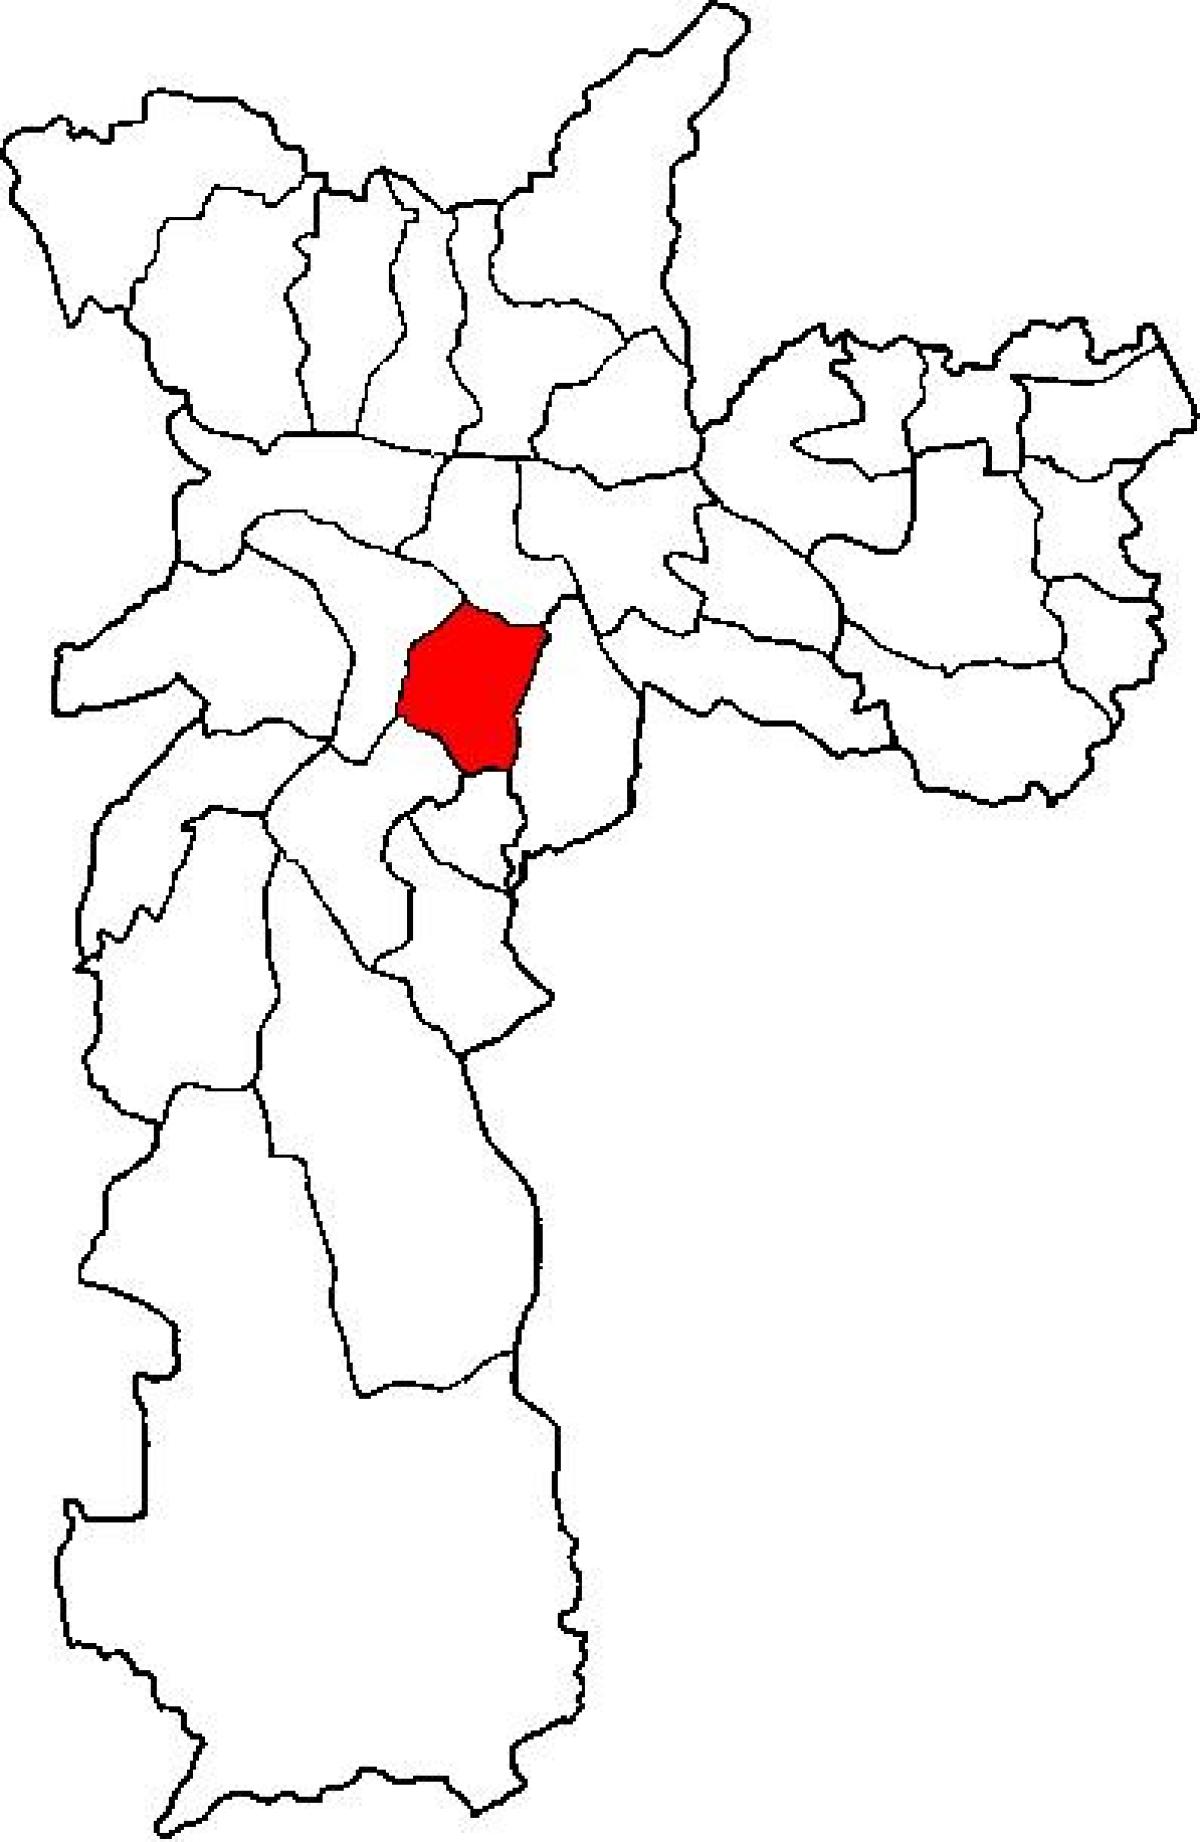 نقشہ کی ولا ماریانا ذیلی صوبے ساؤ پالو